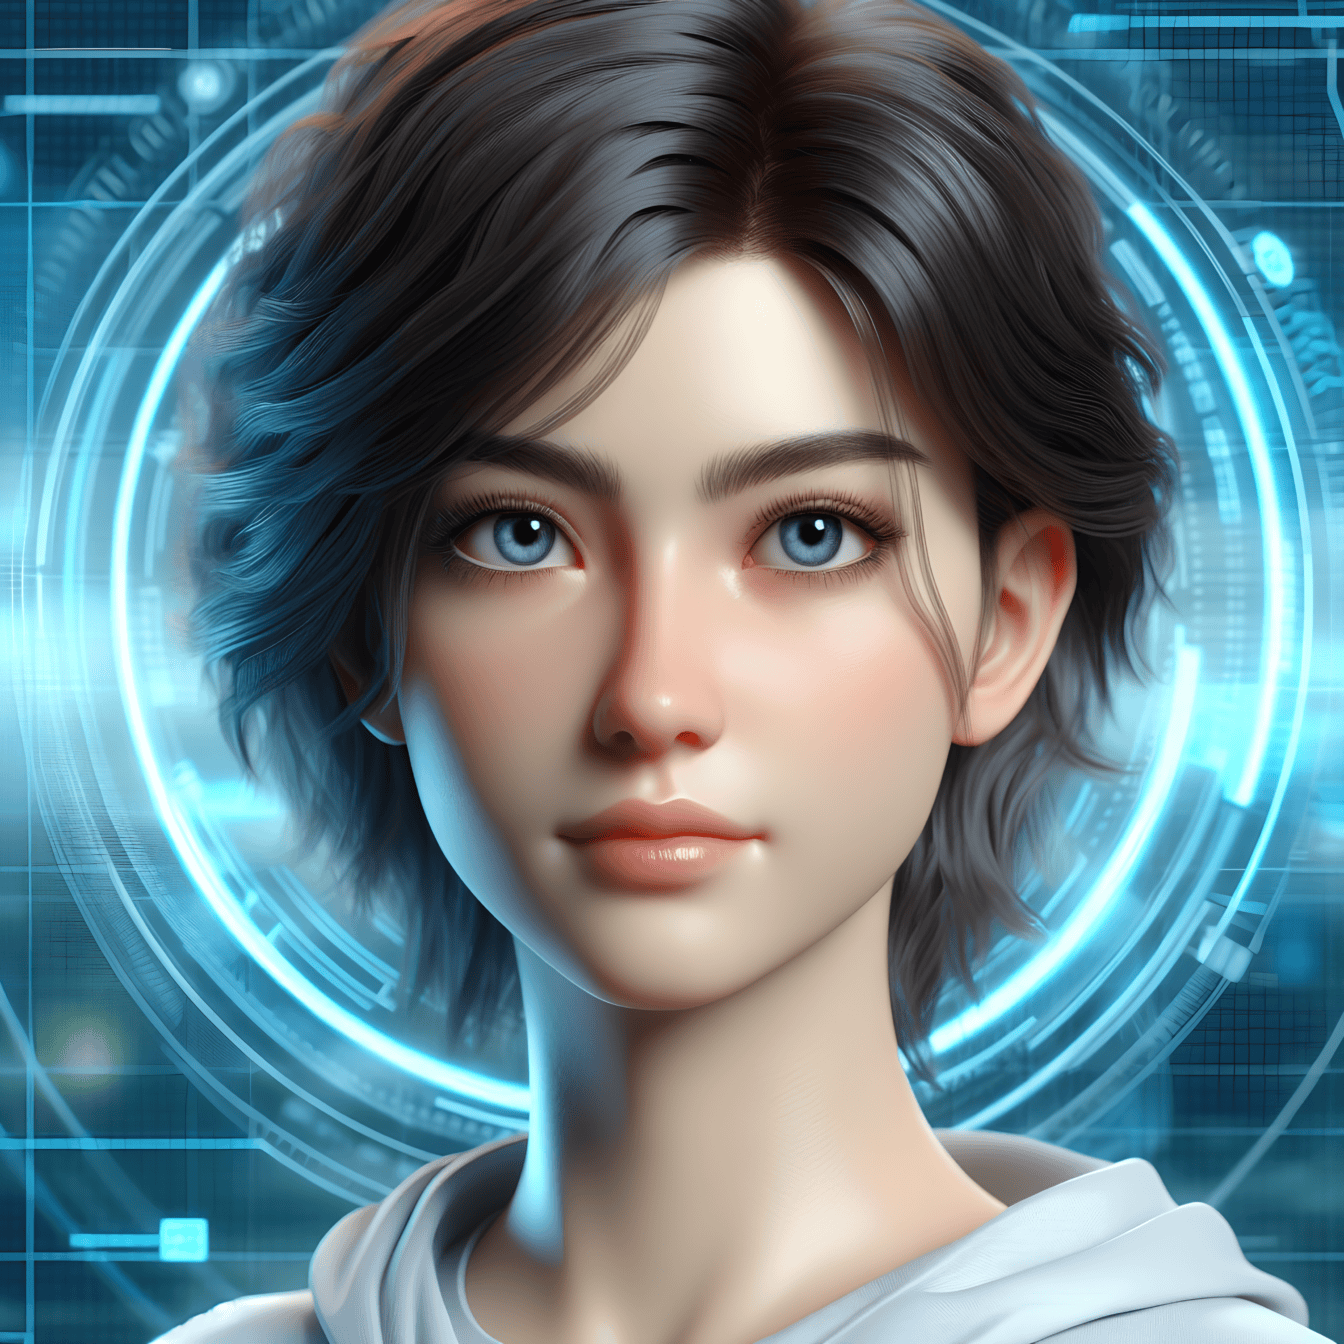 Potret digital seorang wanita muda dengan rambut pendek dan mata biru di dalam realitas virtual